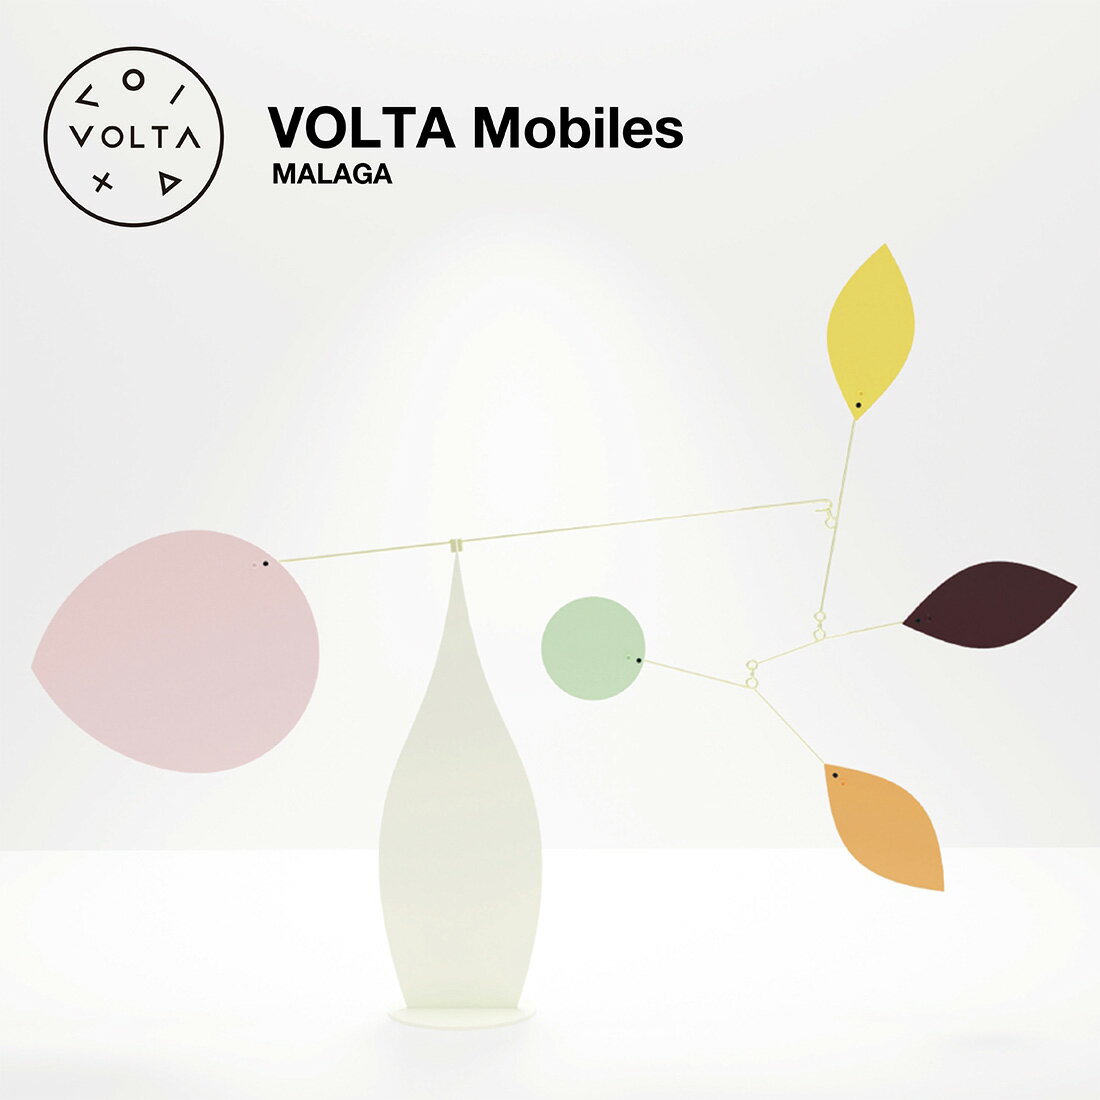 【店舗クーポン発行中】VOLTA Mobiles ヴォルタモビール MALAGA マラガ Oxto&Mario Conti モビール アート インテリア オブジェ スペイン